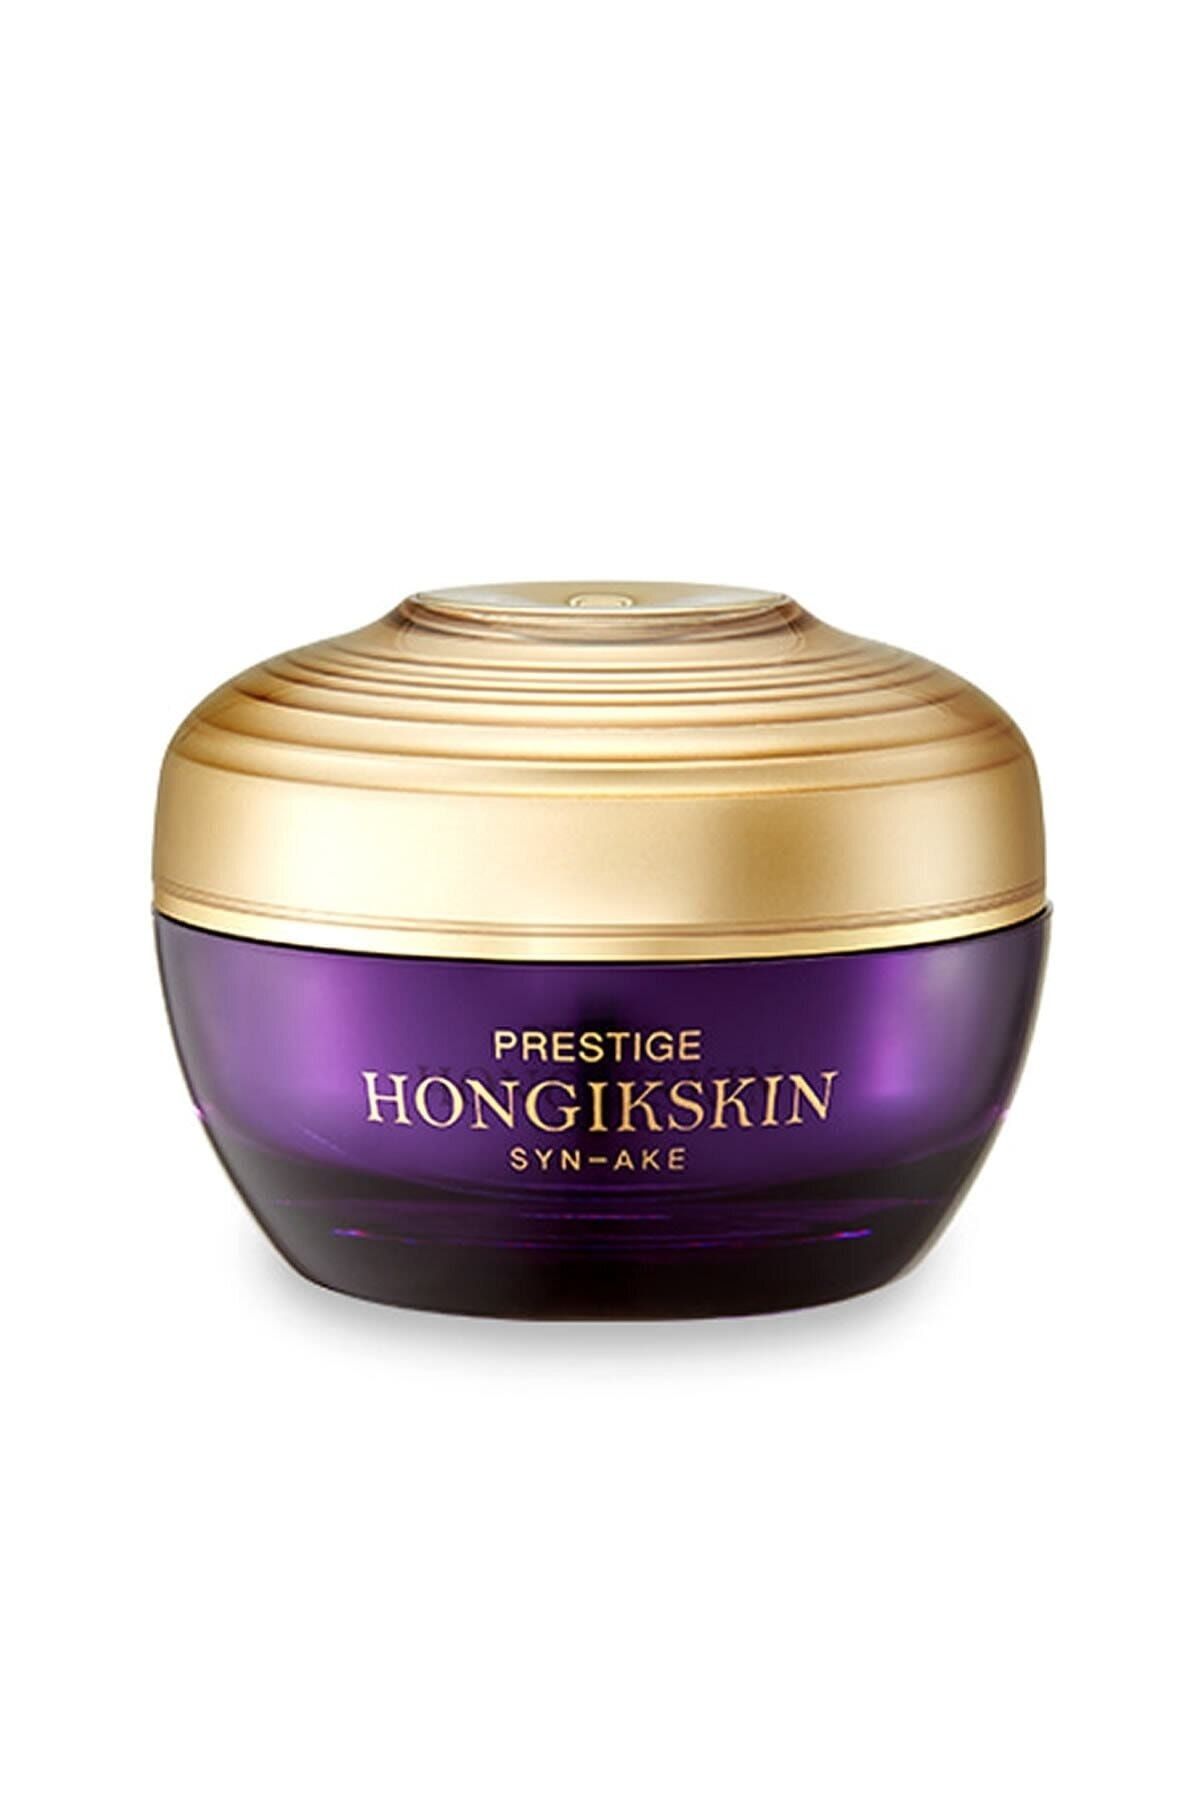 Bergamo Hongikskin Prestige Syn-ake Memory Cream ( Gözenek, Sıkılaştırıcı, Anti Aging Krem )